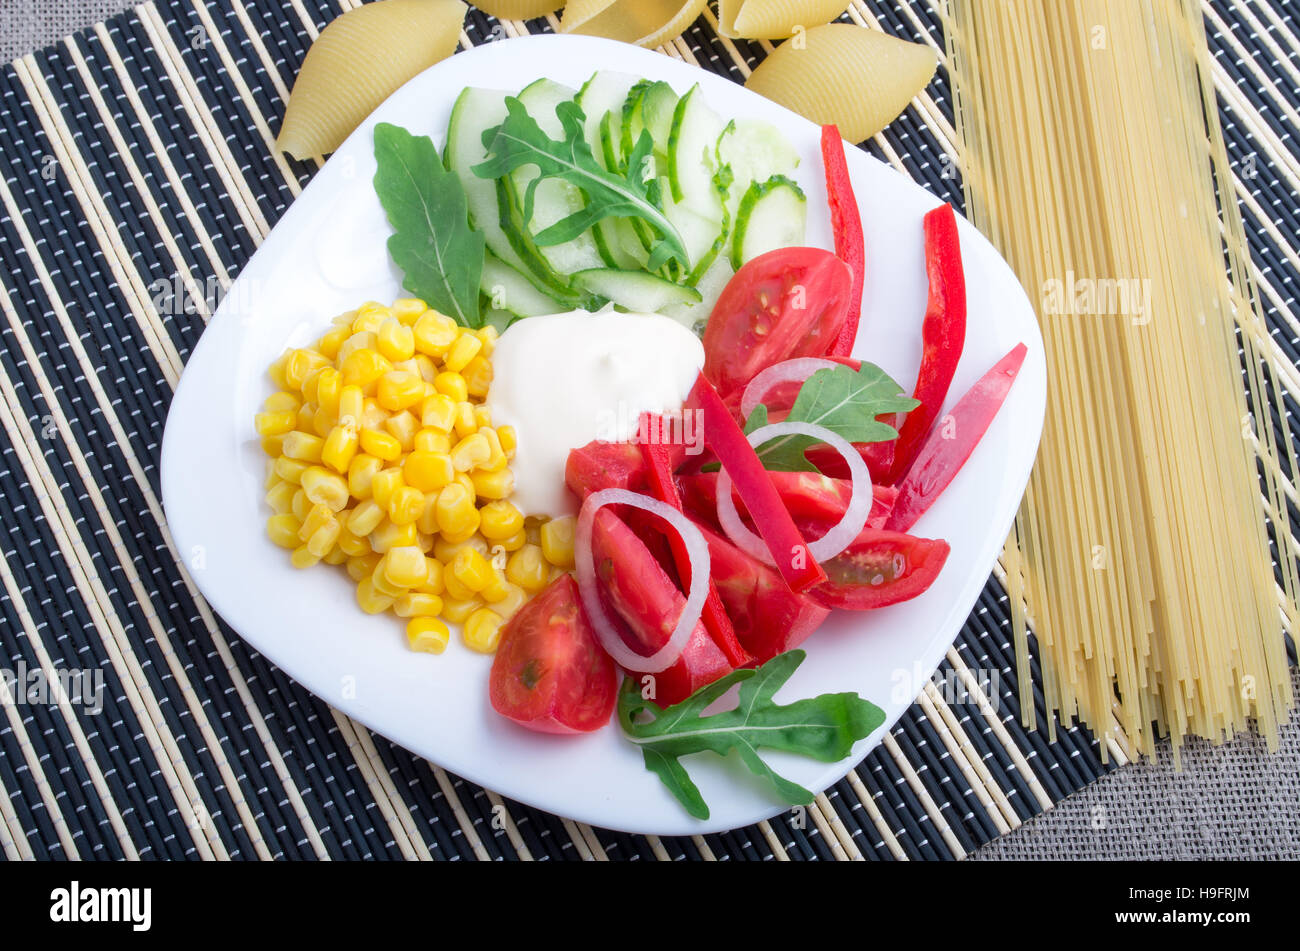 Weißen Teller mit frischen Tomaten, Gurkenscheiben, Mais, Parmeggiano und Zwiebeln neben Zutaten für Spaghetti auf einem gestreiften Hintergrund Stockfoto